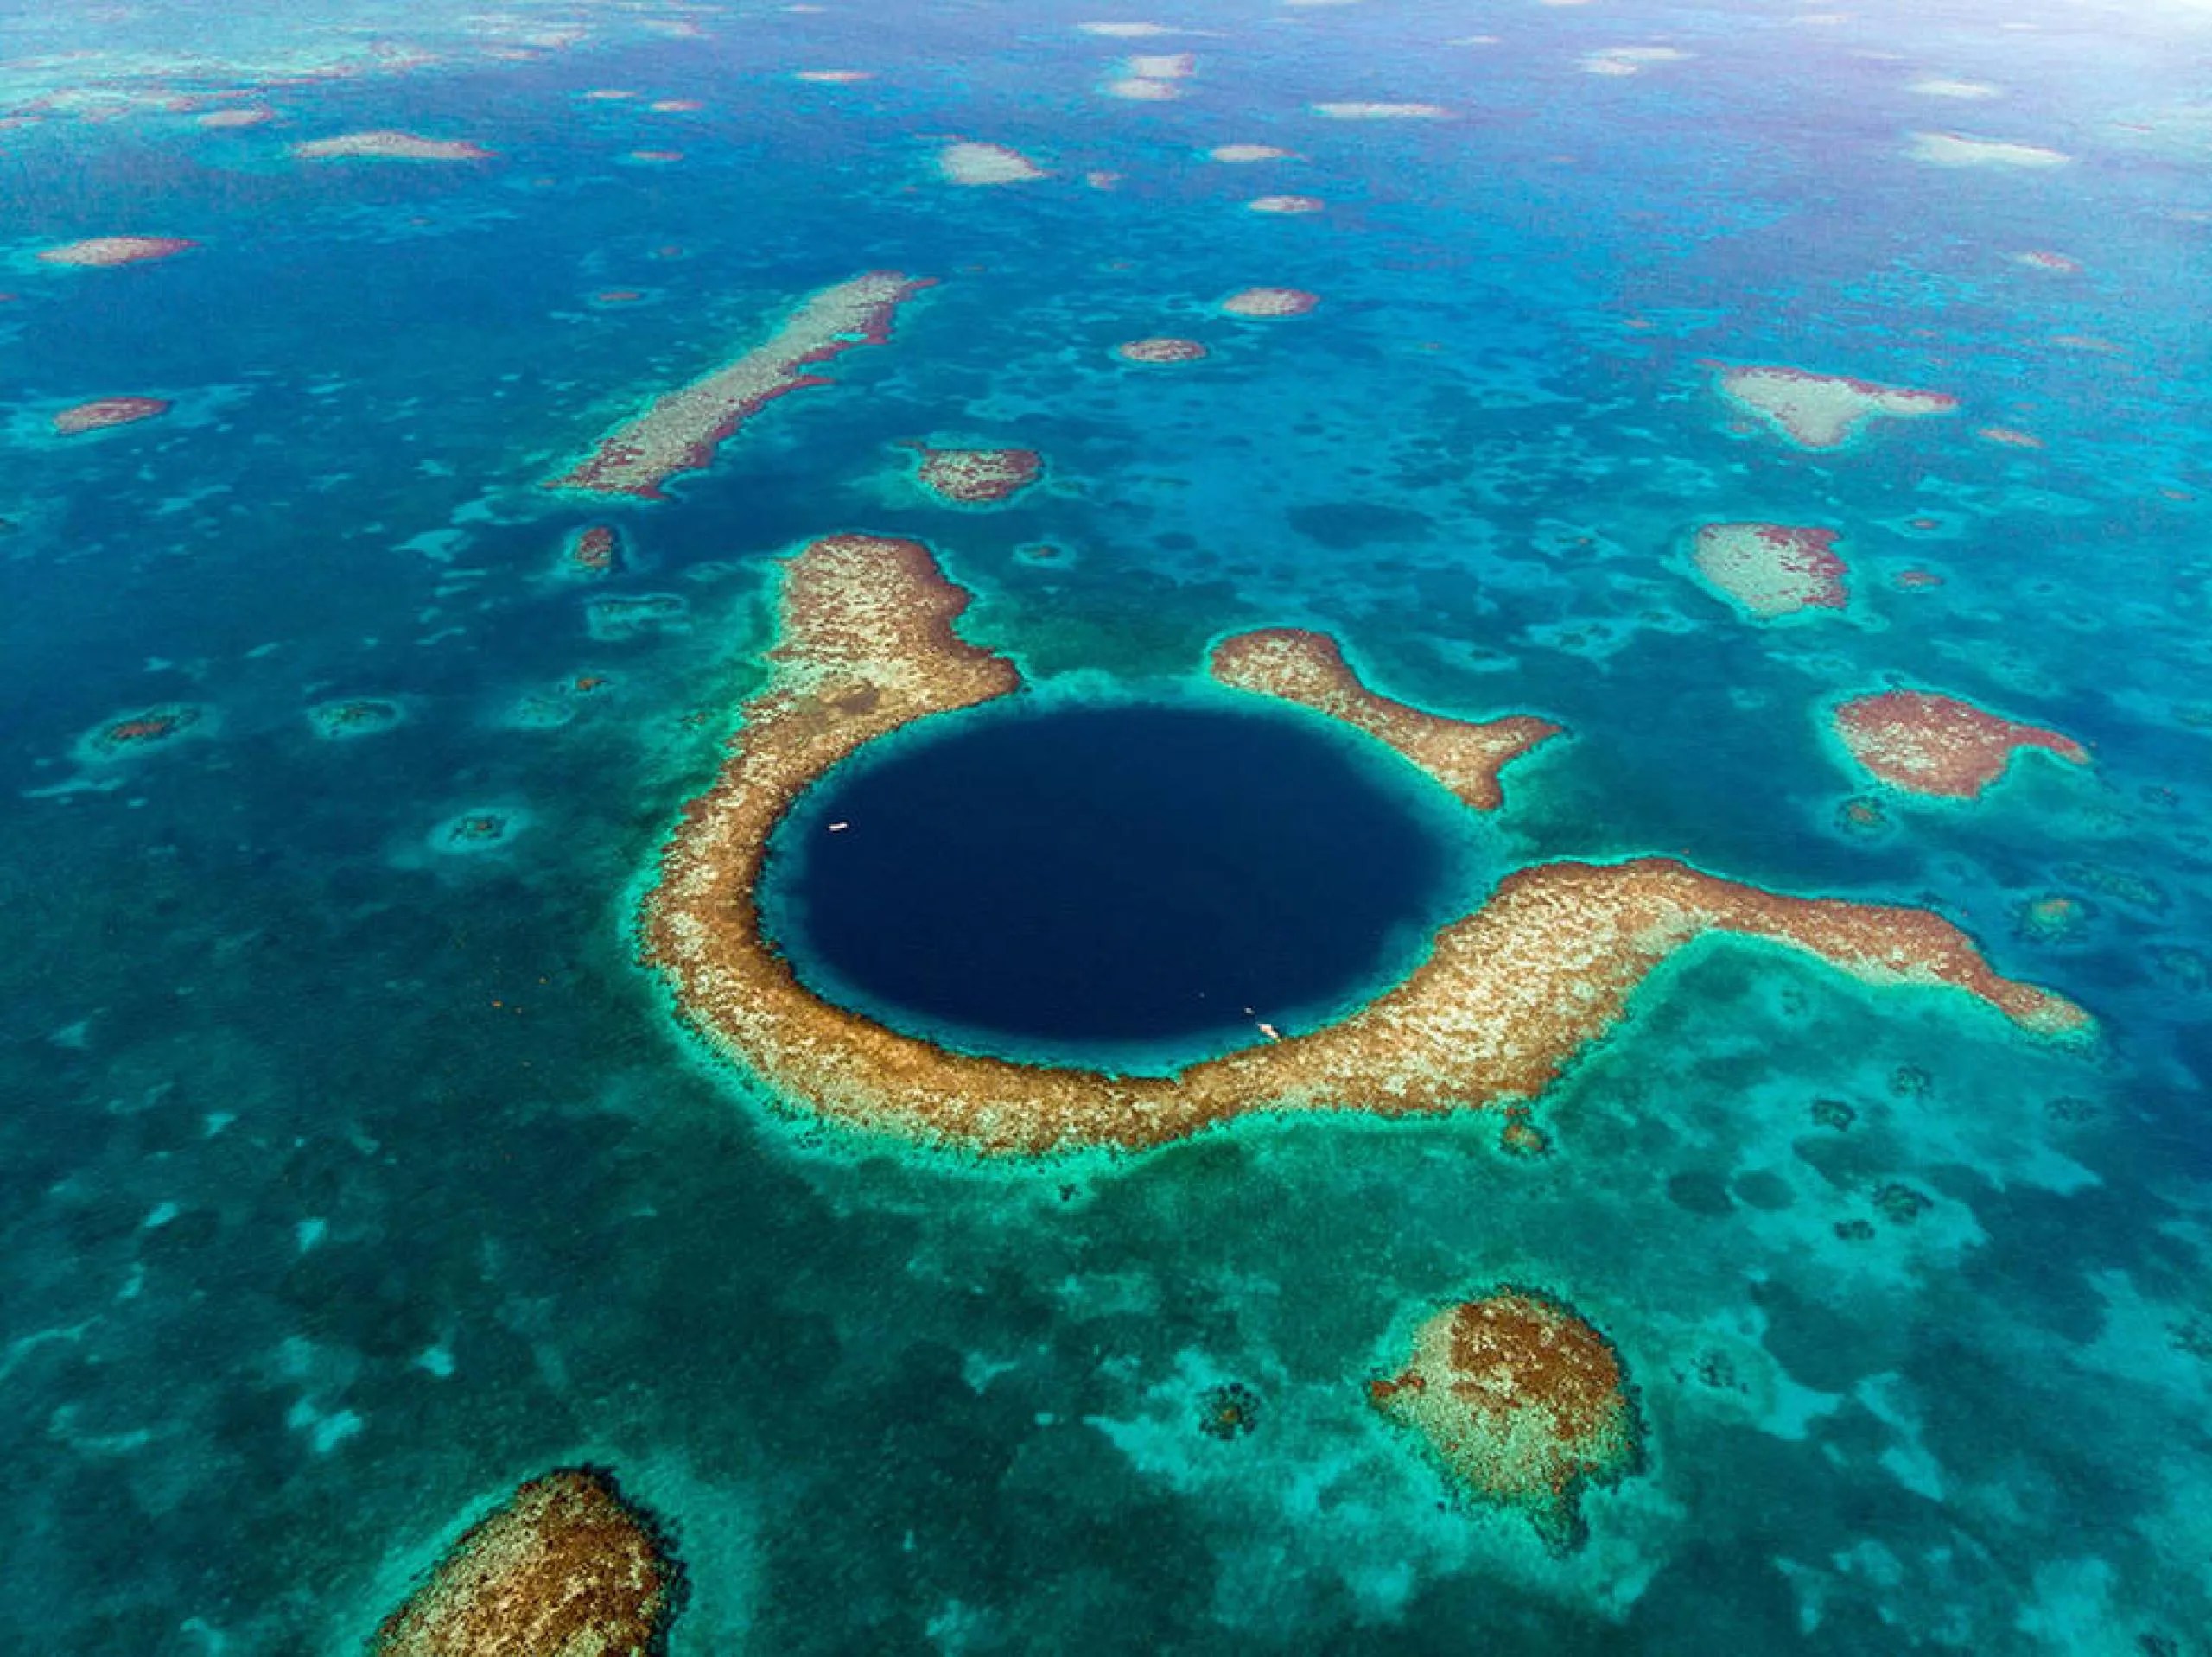 Foto aérea de una profunda cueva marina conocida como el Gran Agujero Azul, que forma parte del sistema de barrera de coral de Belice. Un círculo azul intenso en el centro de la imagen está rodeado por una sección de coral marrón claro. Más parches de coral marrón claro están dispersos por el agua de color turquesa circundante.